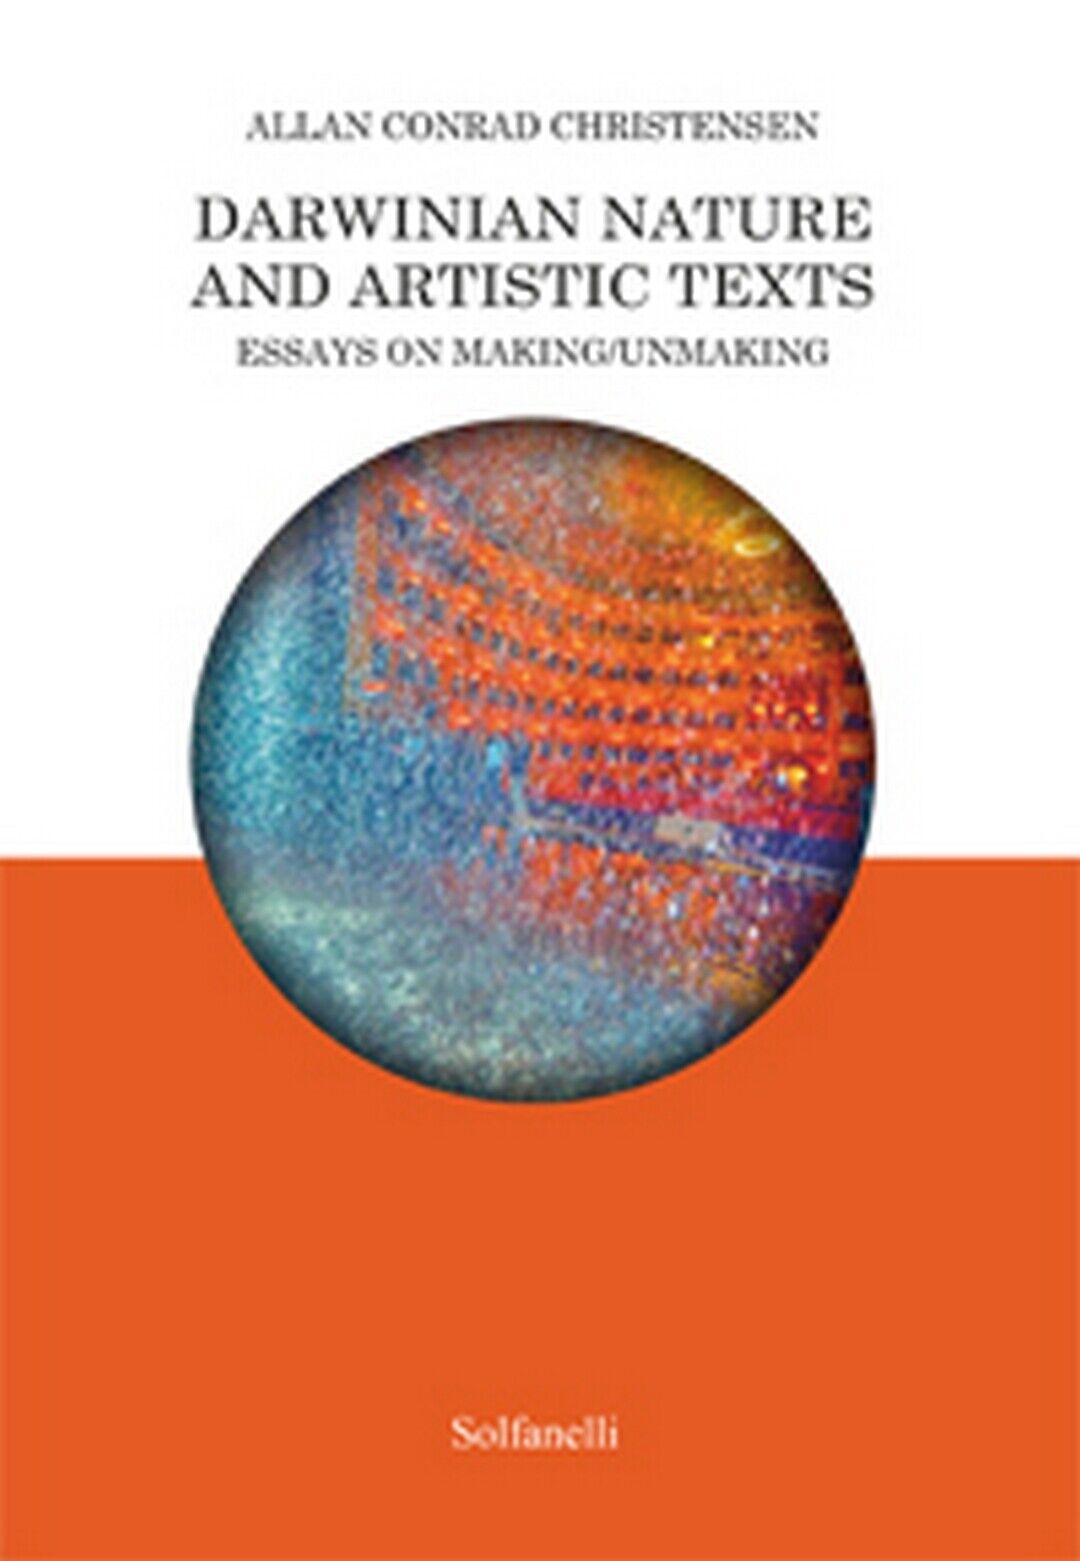 Darwinian Nature and Artistic Texts, Allan Conrad Christensen,  Solfanelli Ediz.